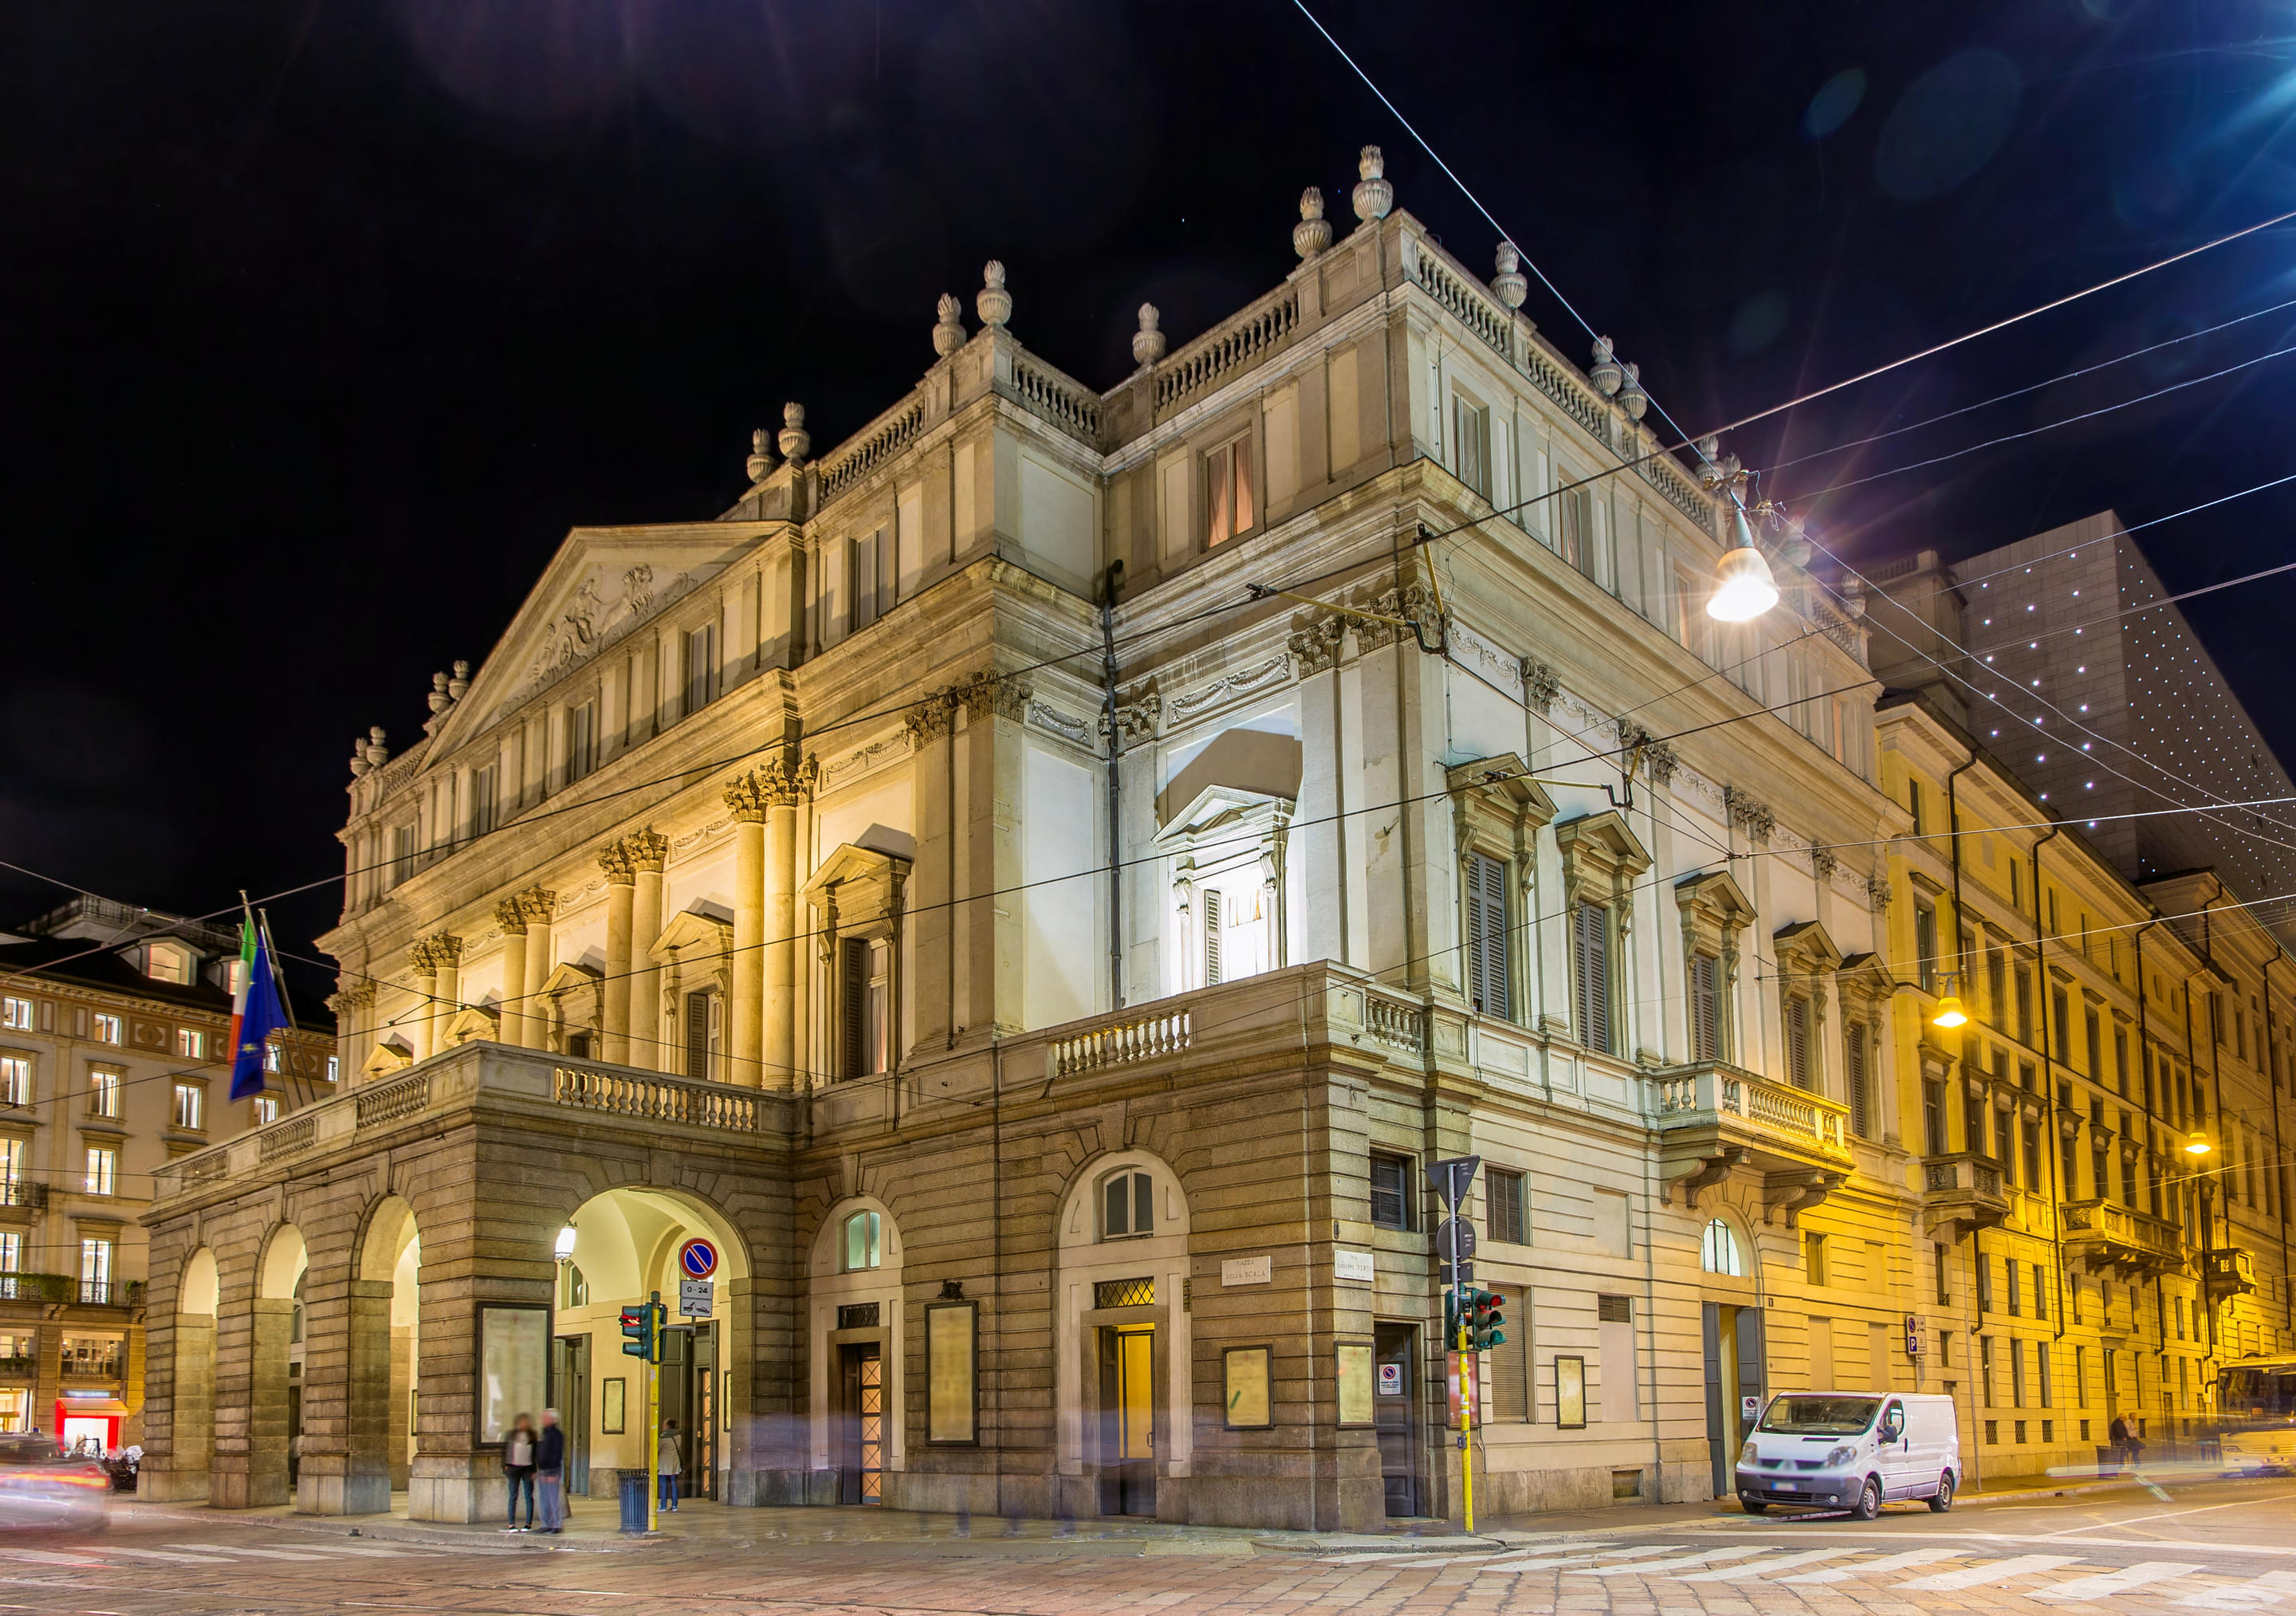 Teatro Alla Scala Overview